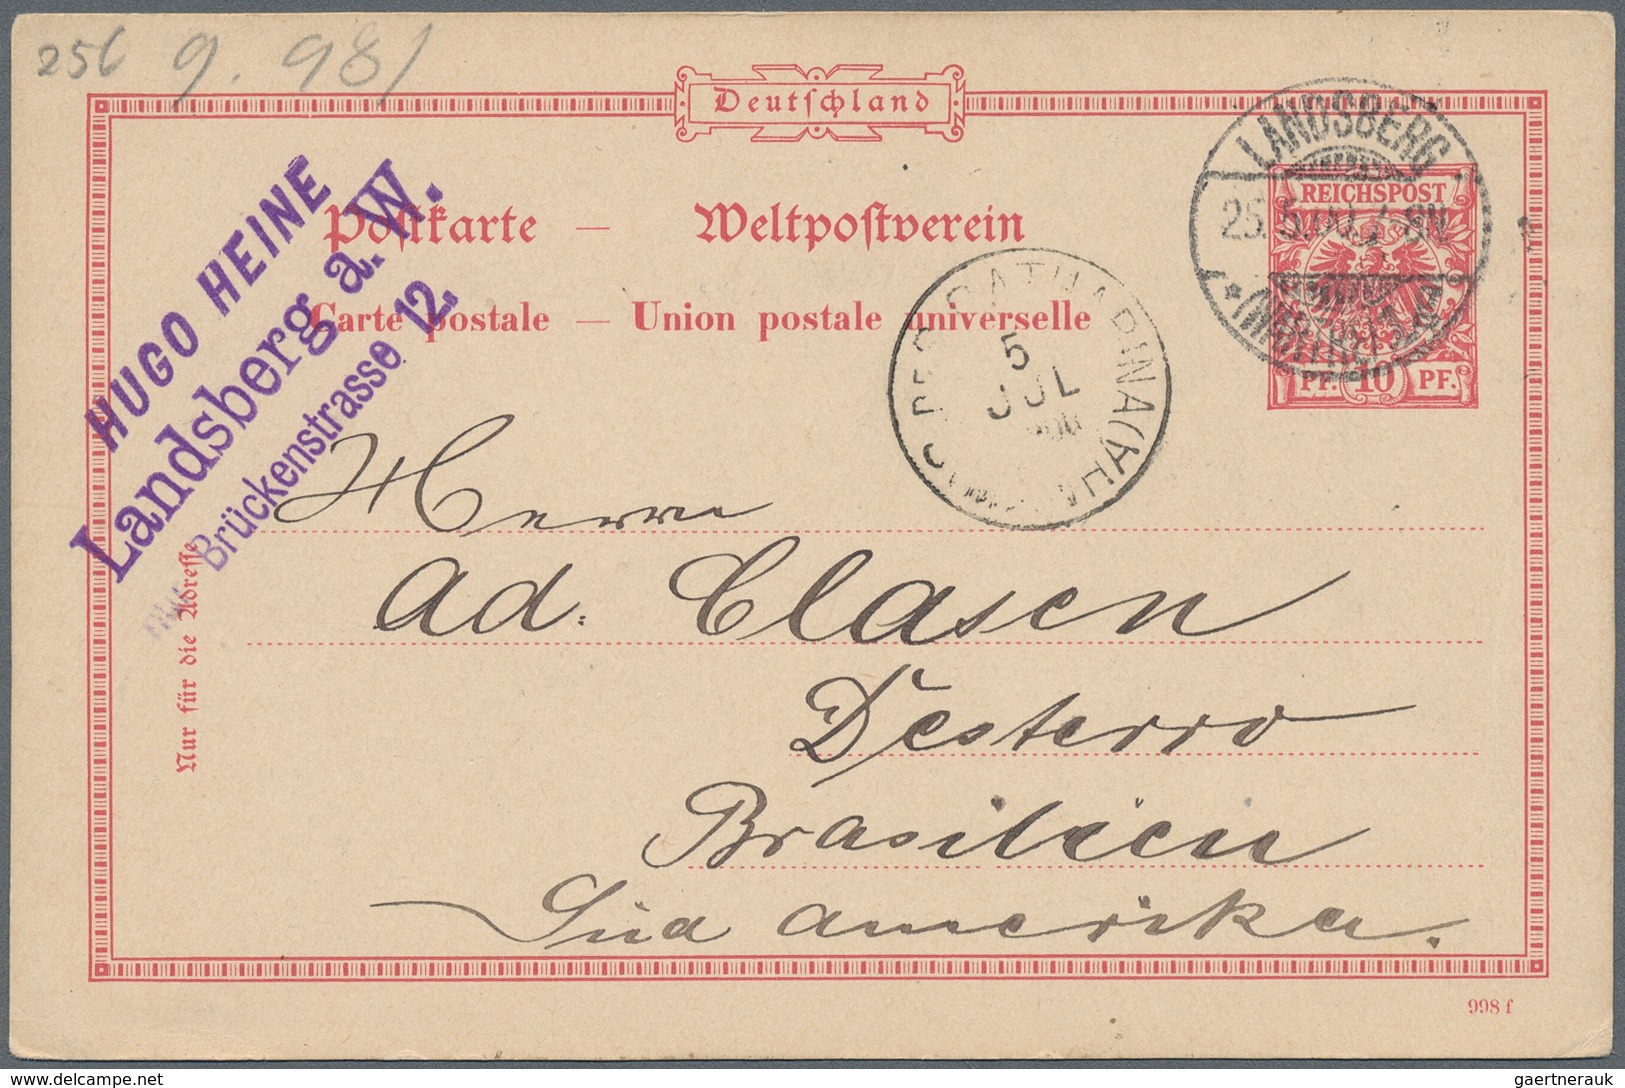 Deutsches Reich: 1872/1920 (ca.), Posten von ca. 90 Belegen ab den Brustschilden bis Germania, dabei